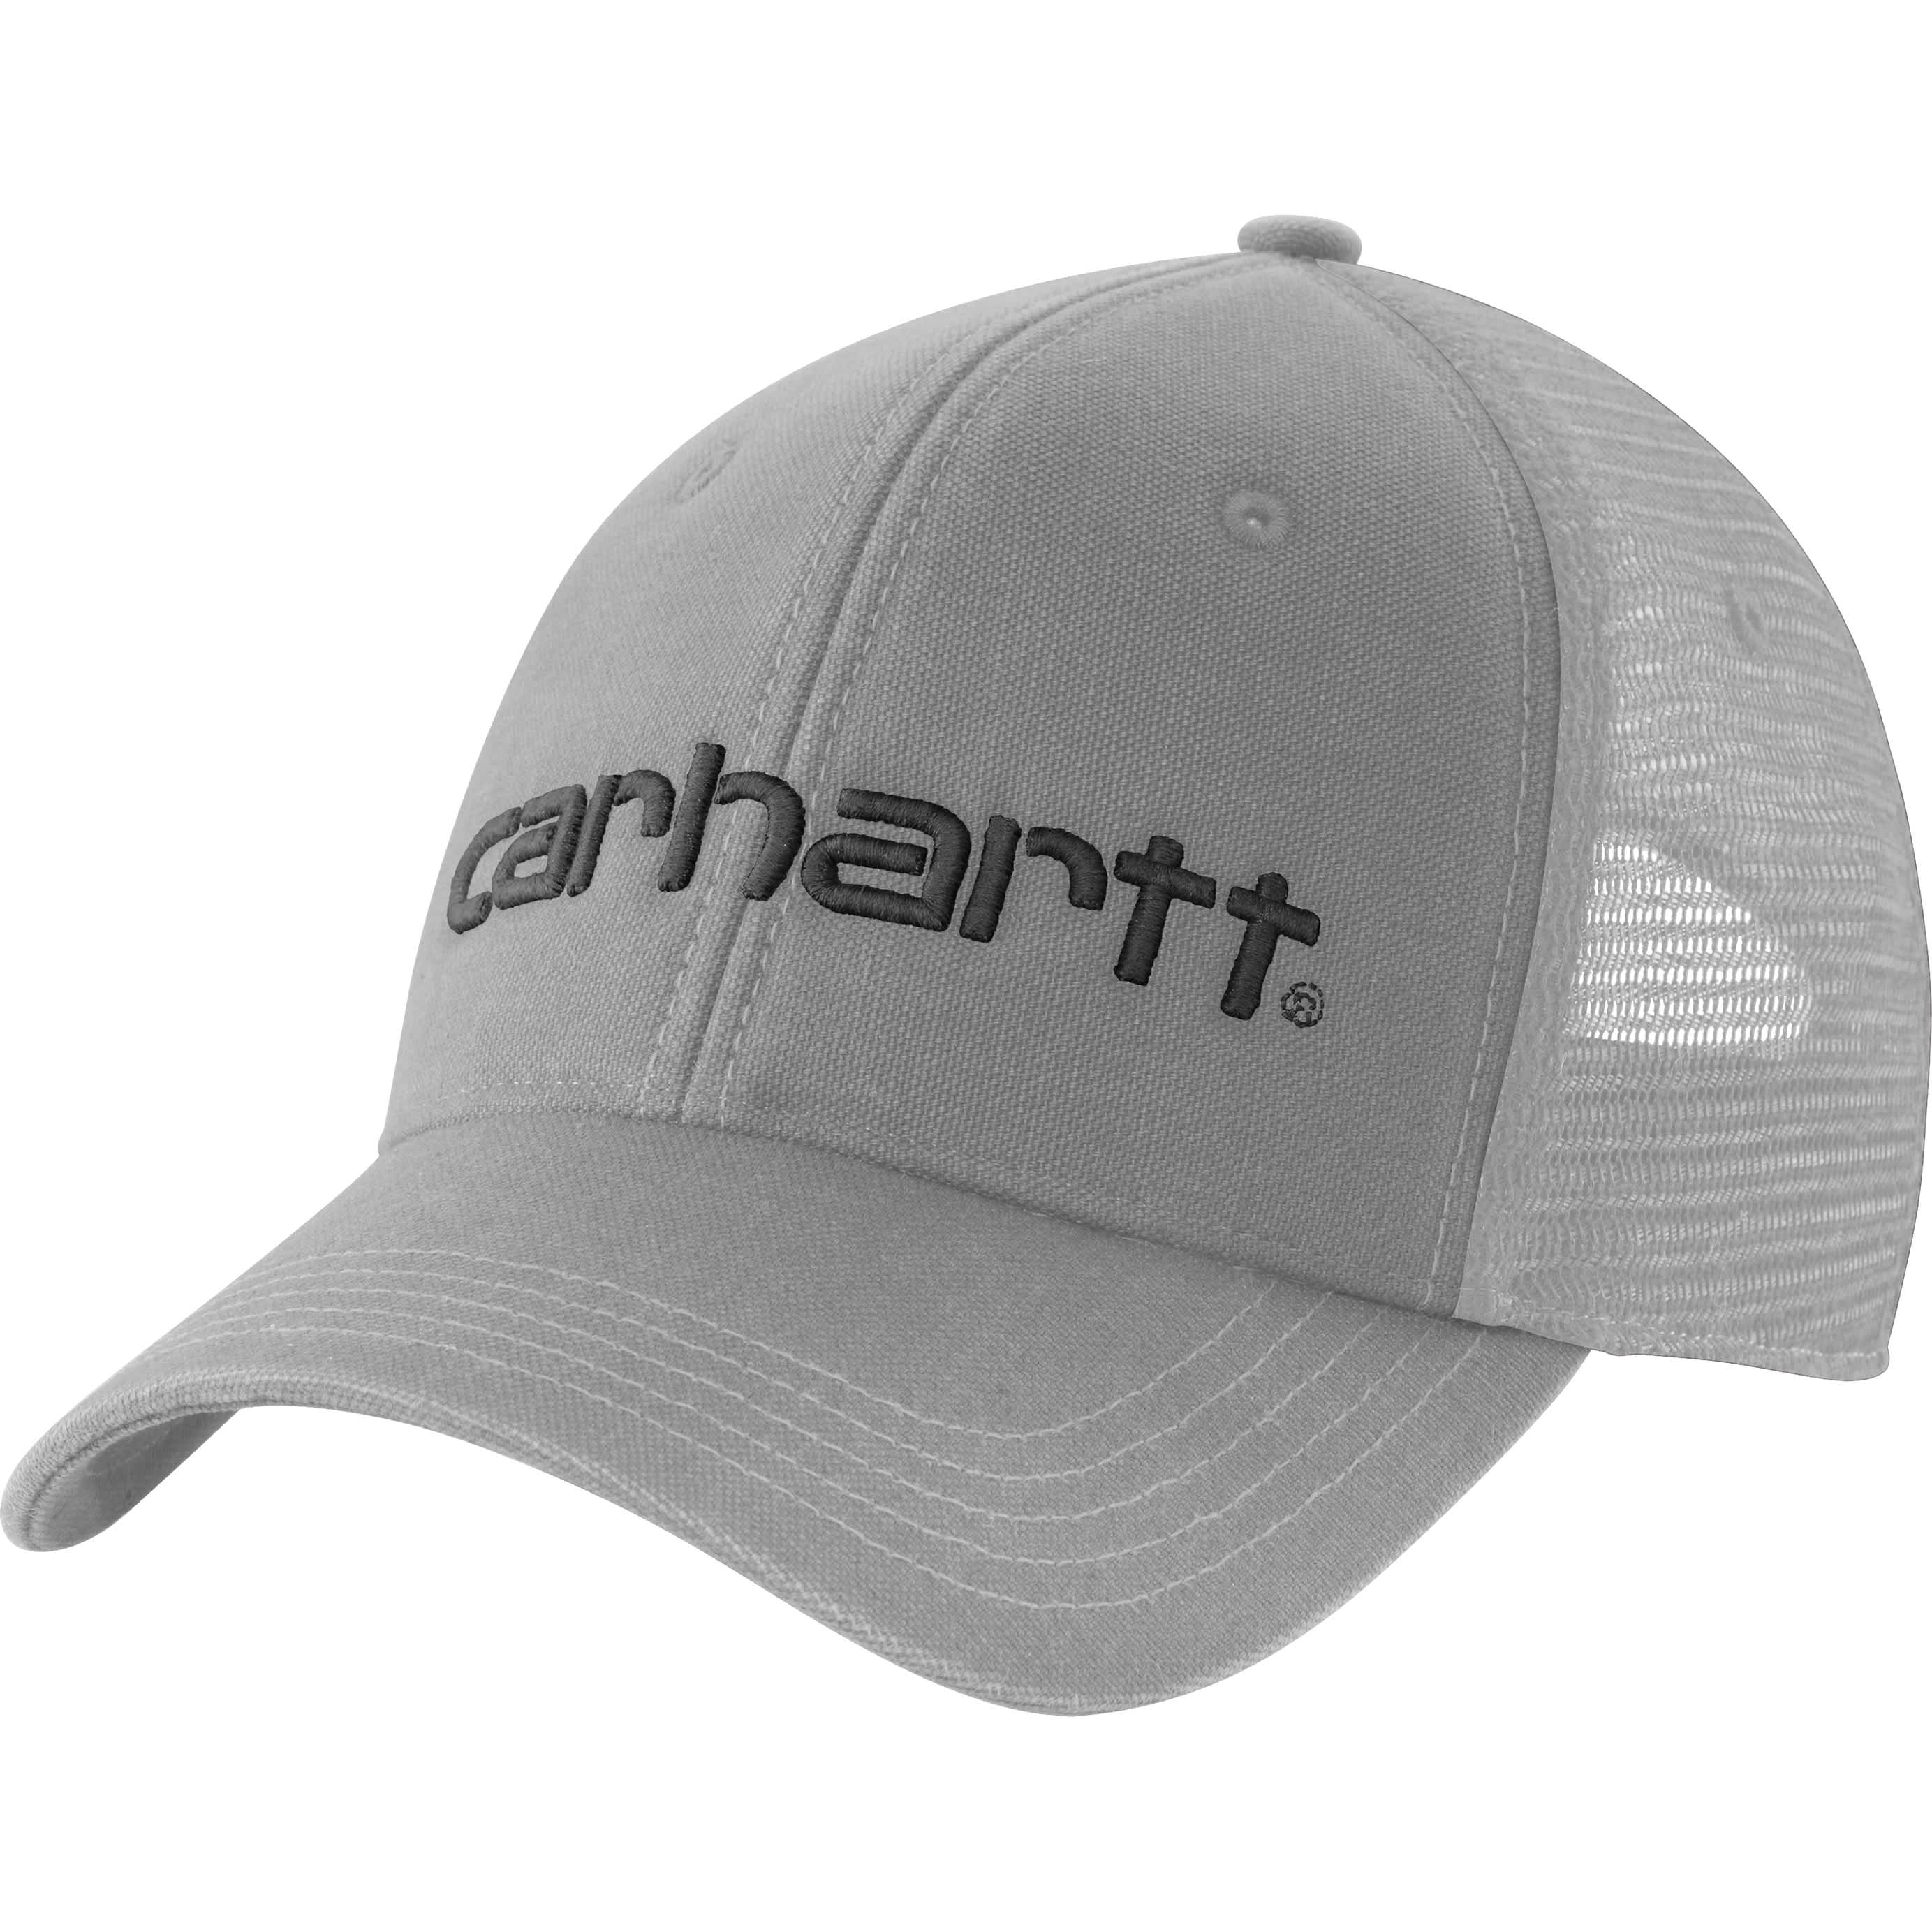 Carhartt® Men’s Dunmore Cap